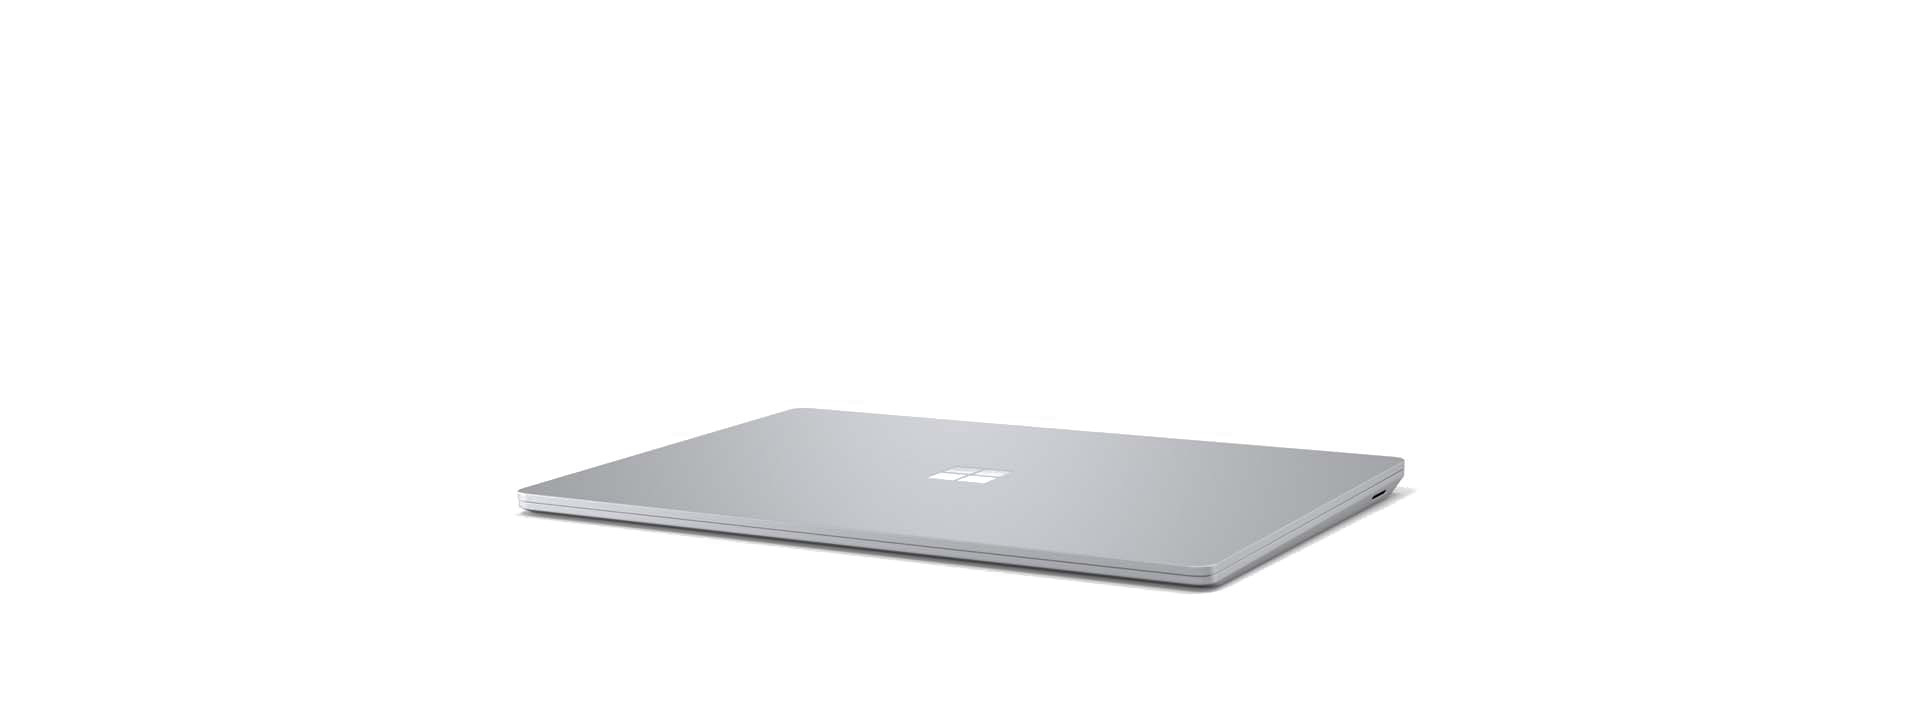 Surface Laptop 3 en un ángulo, con la pantalla cerrada